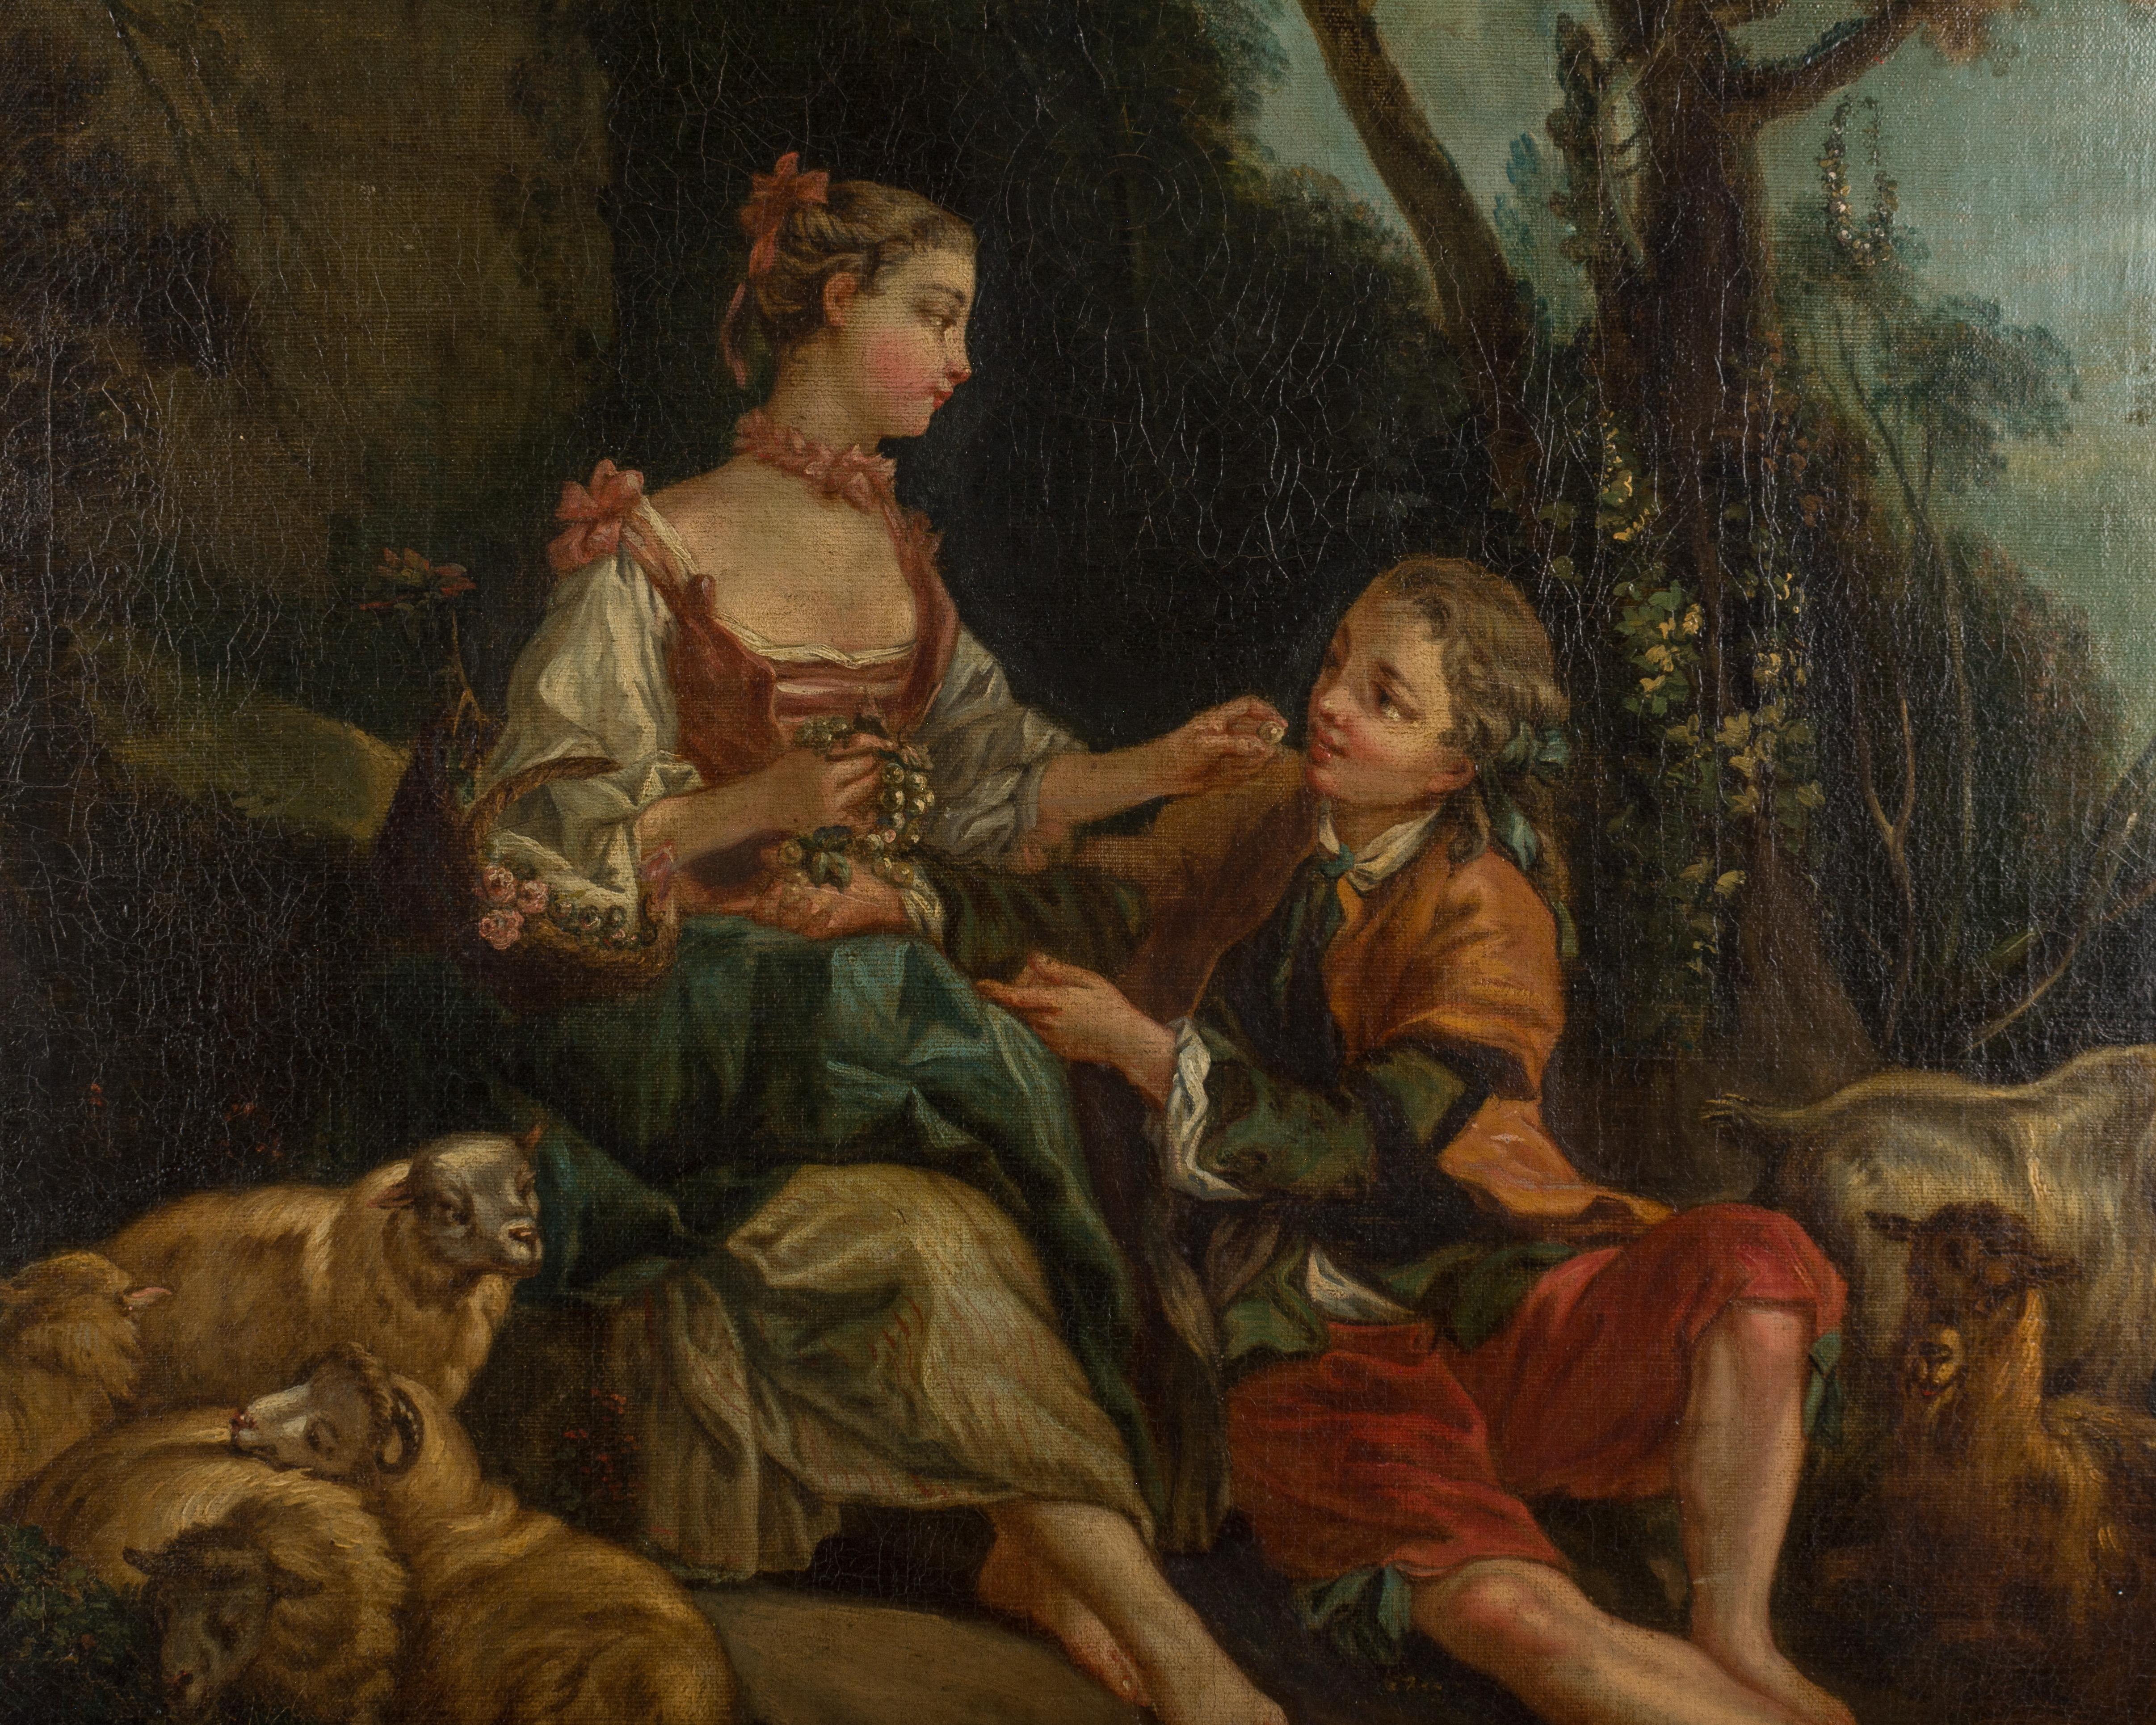 Peinture française de la fin du XVIIIe siècle représentant un couple romantique dans un cadre pastoral. Huile sur toile. Non signée. Cadre original en bois doré. Petite réparation de la toile dans le coin supérieur gauche. Scène typique des maisons